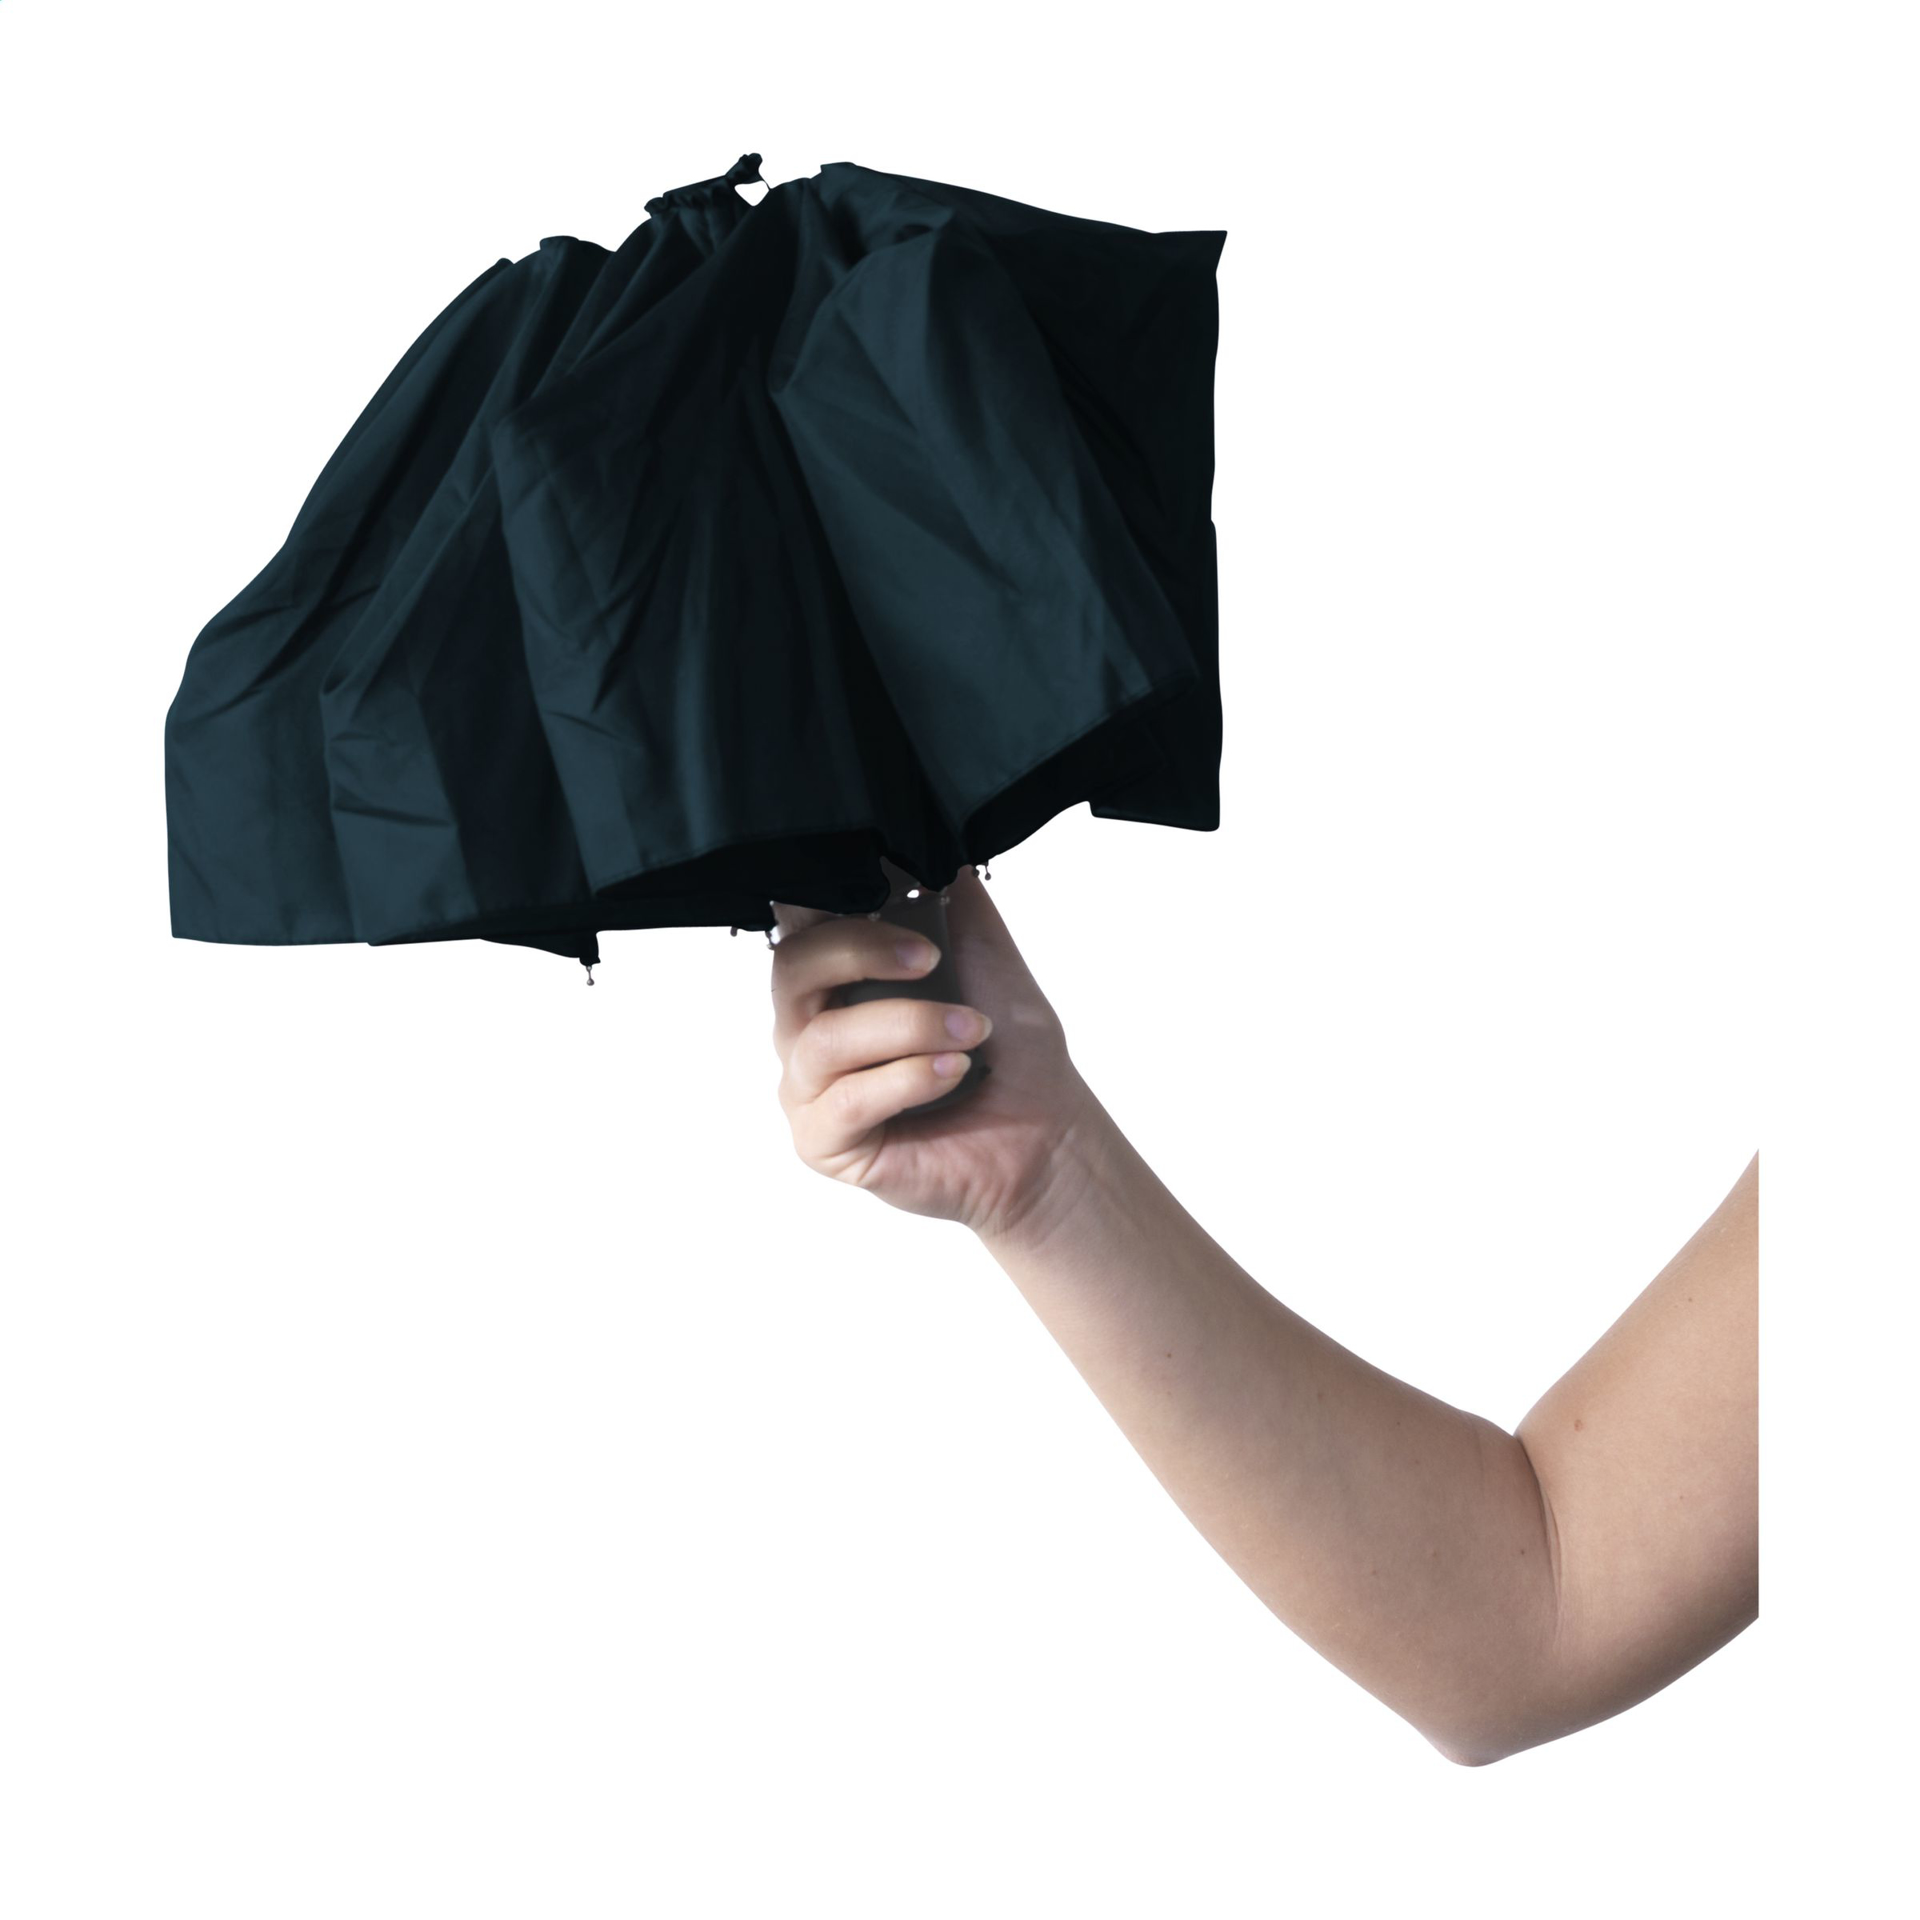 closed black telescopic umbrella